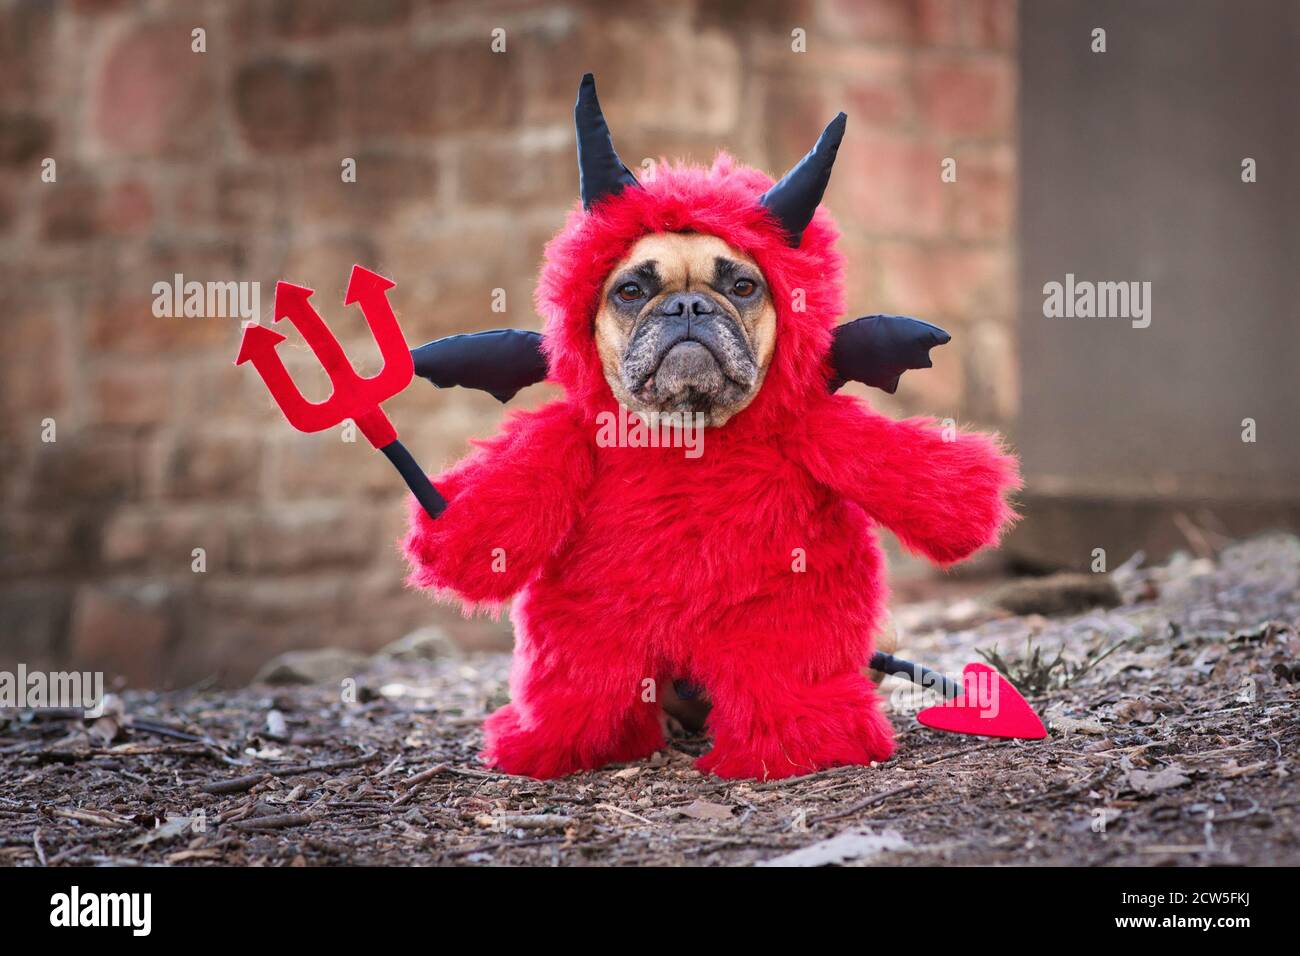 Französischer Bulldog Hund mit rotem Halloween Teufel Kostüm trägt einen  flauschigen Ganzkörperanzug mit gefälschten Armen hält Pitchfork, mit  Teufelsschwanz, Hörner und schwarz b Stockfotografie - Alamy